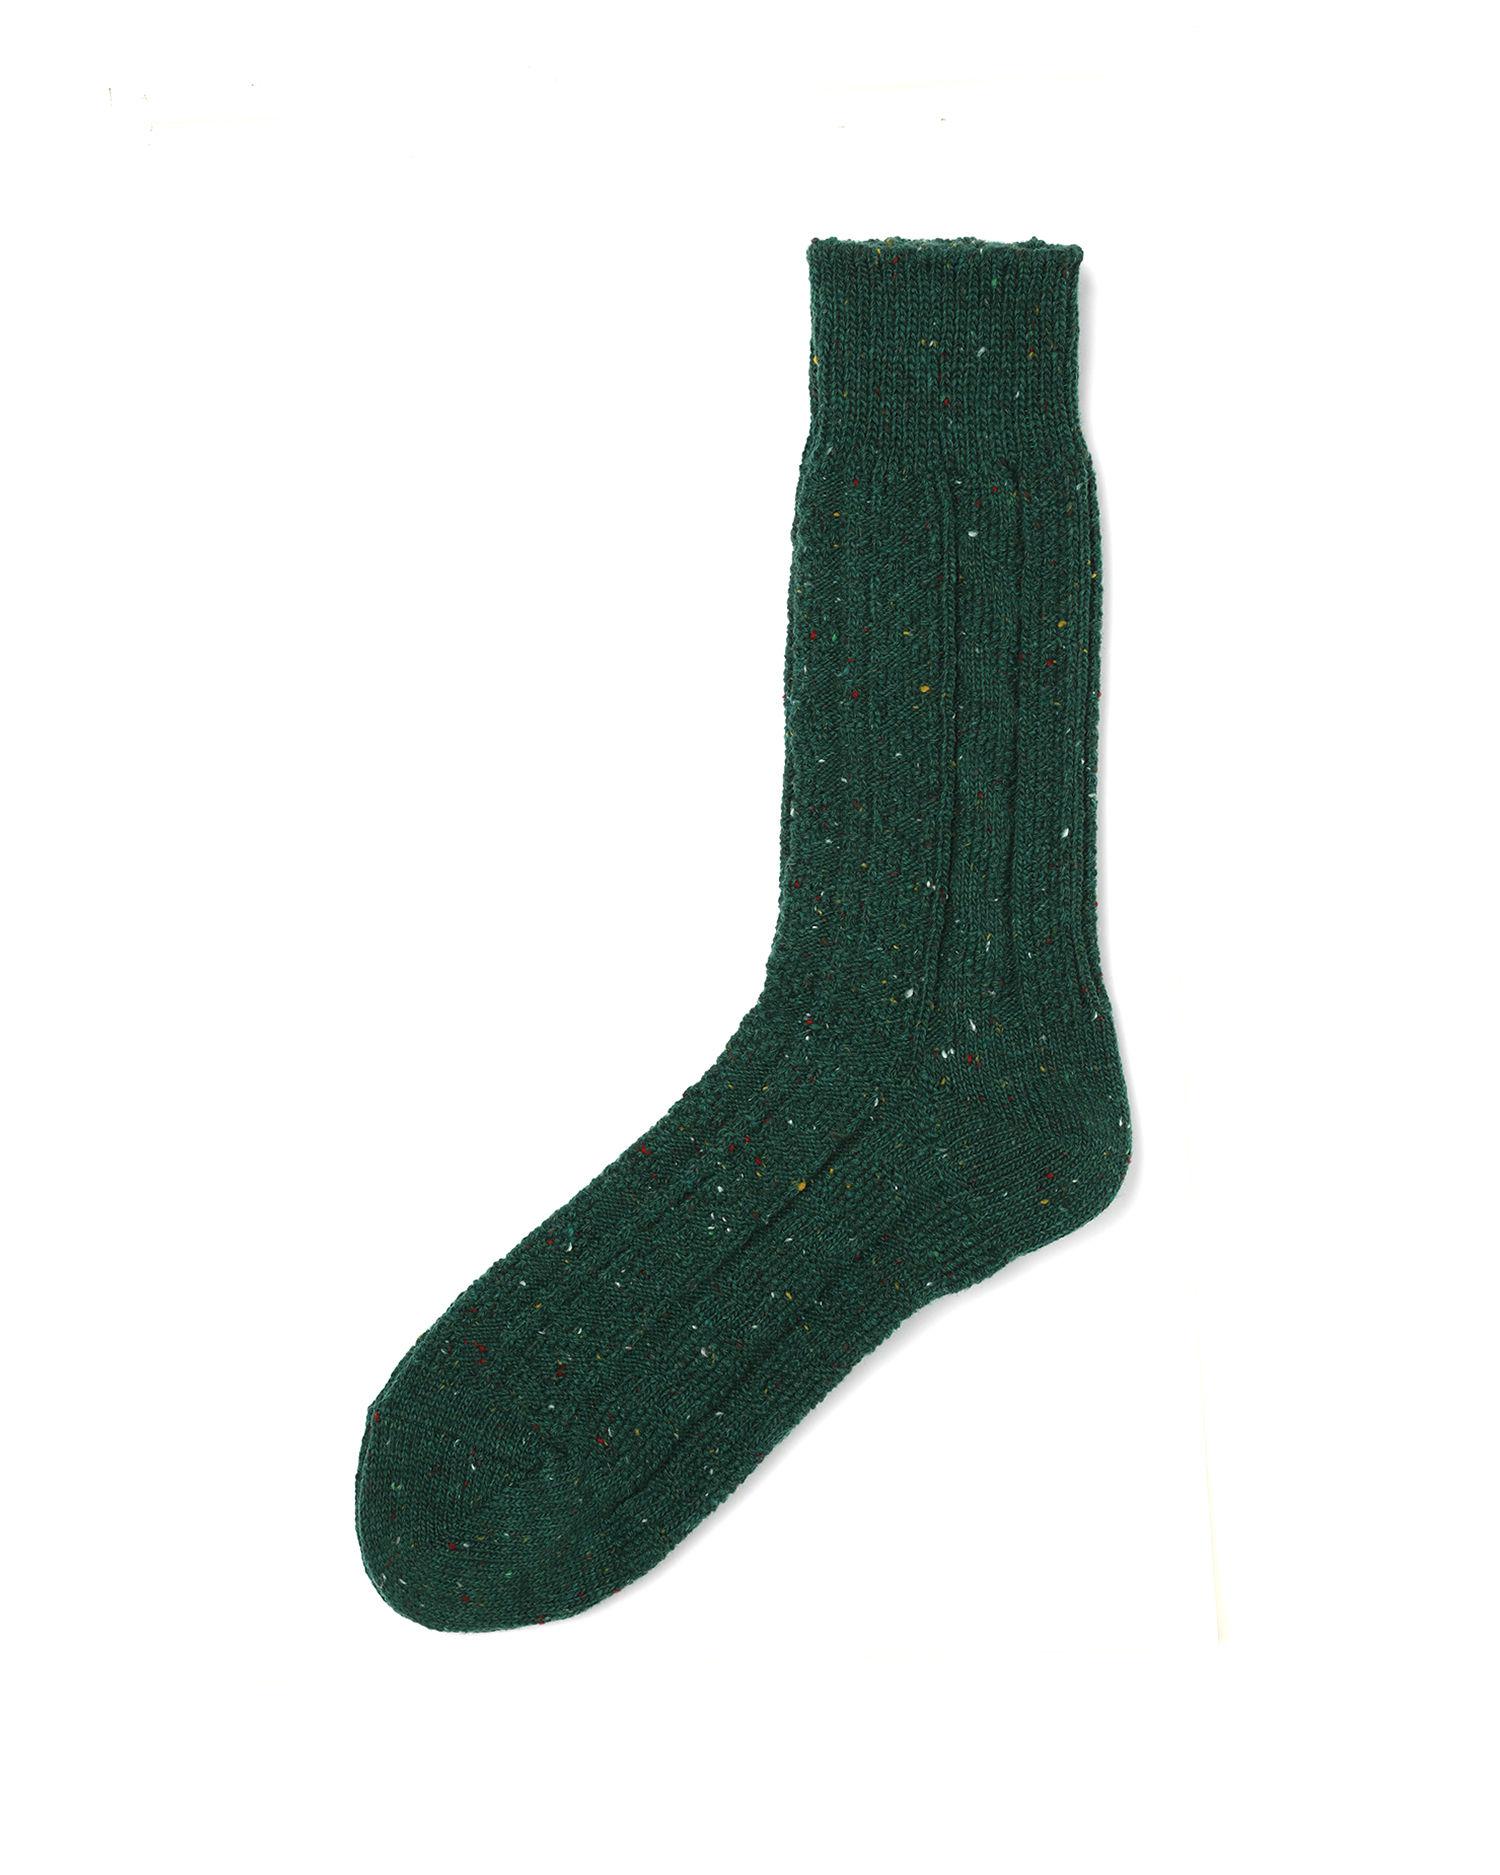 Textured socks by BEAMS PLUS